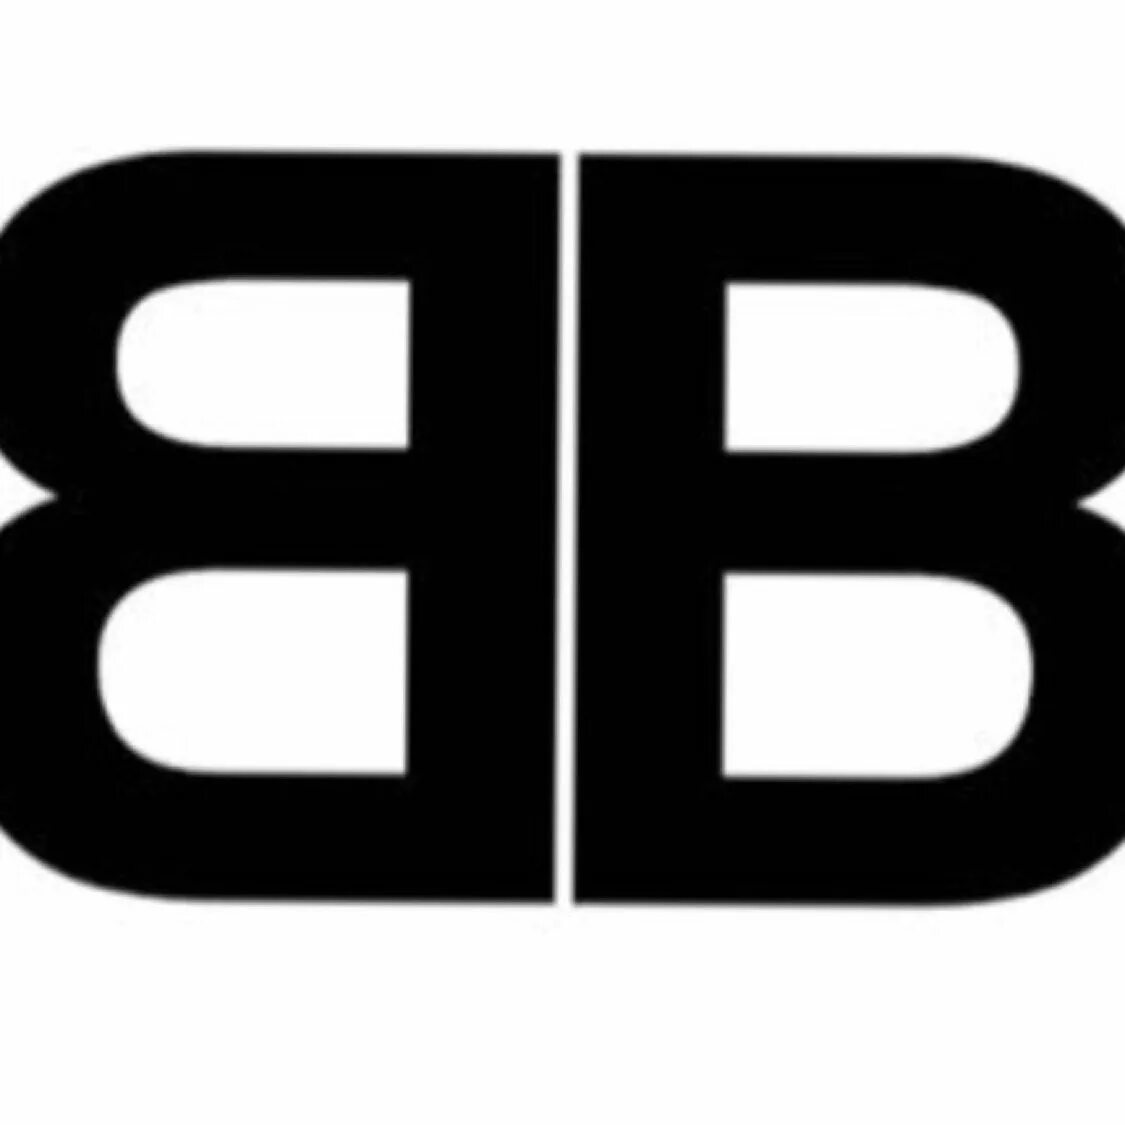 Марка одежды ВВ. Фирма BB. BB лого. Бренд с буквами BB. Ч б бб б б б